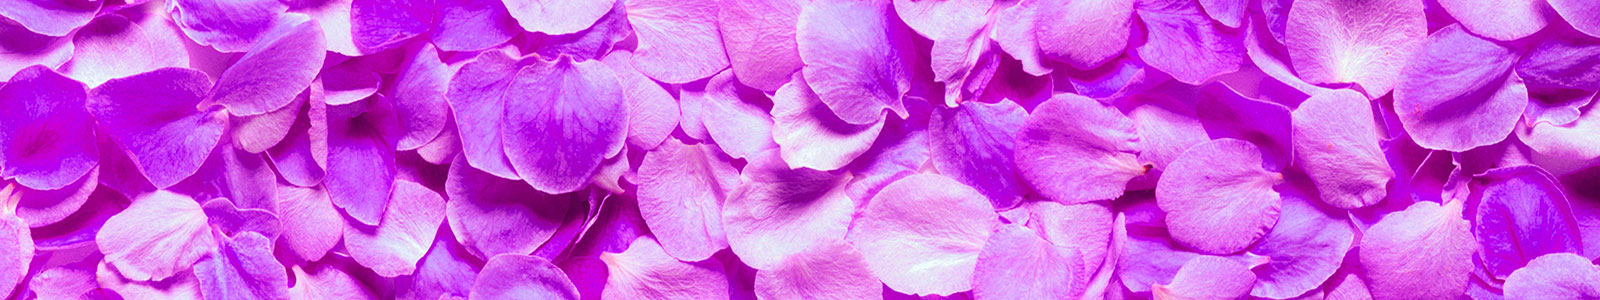 №978 - Фиолетовые лепестки